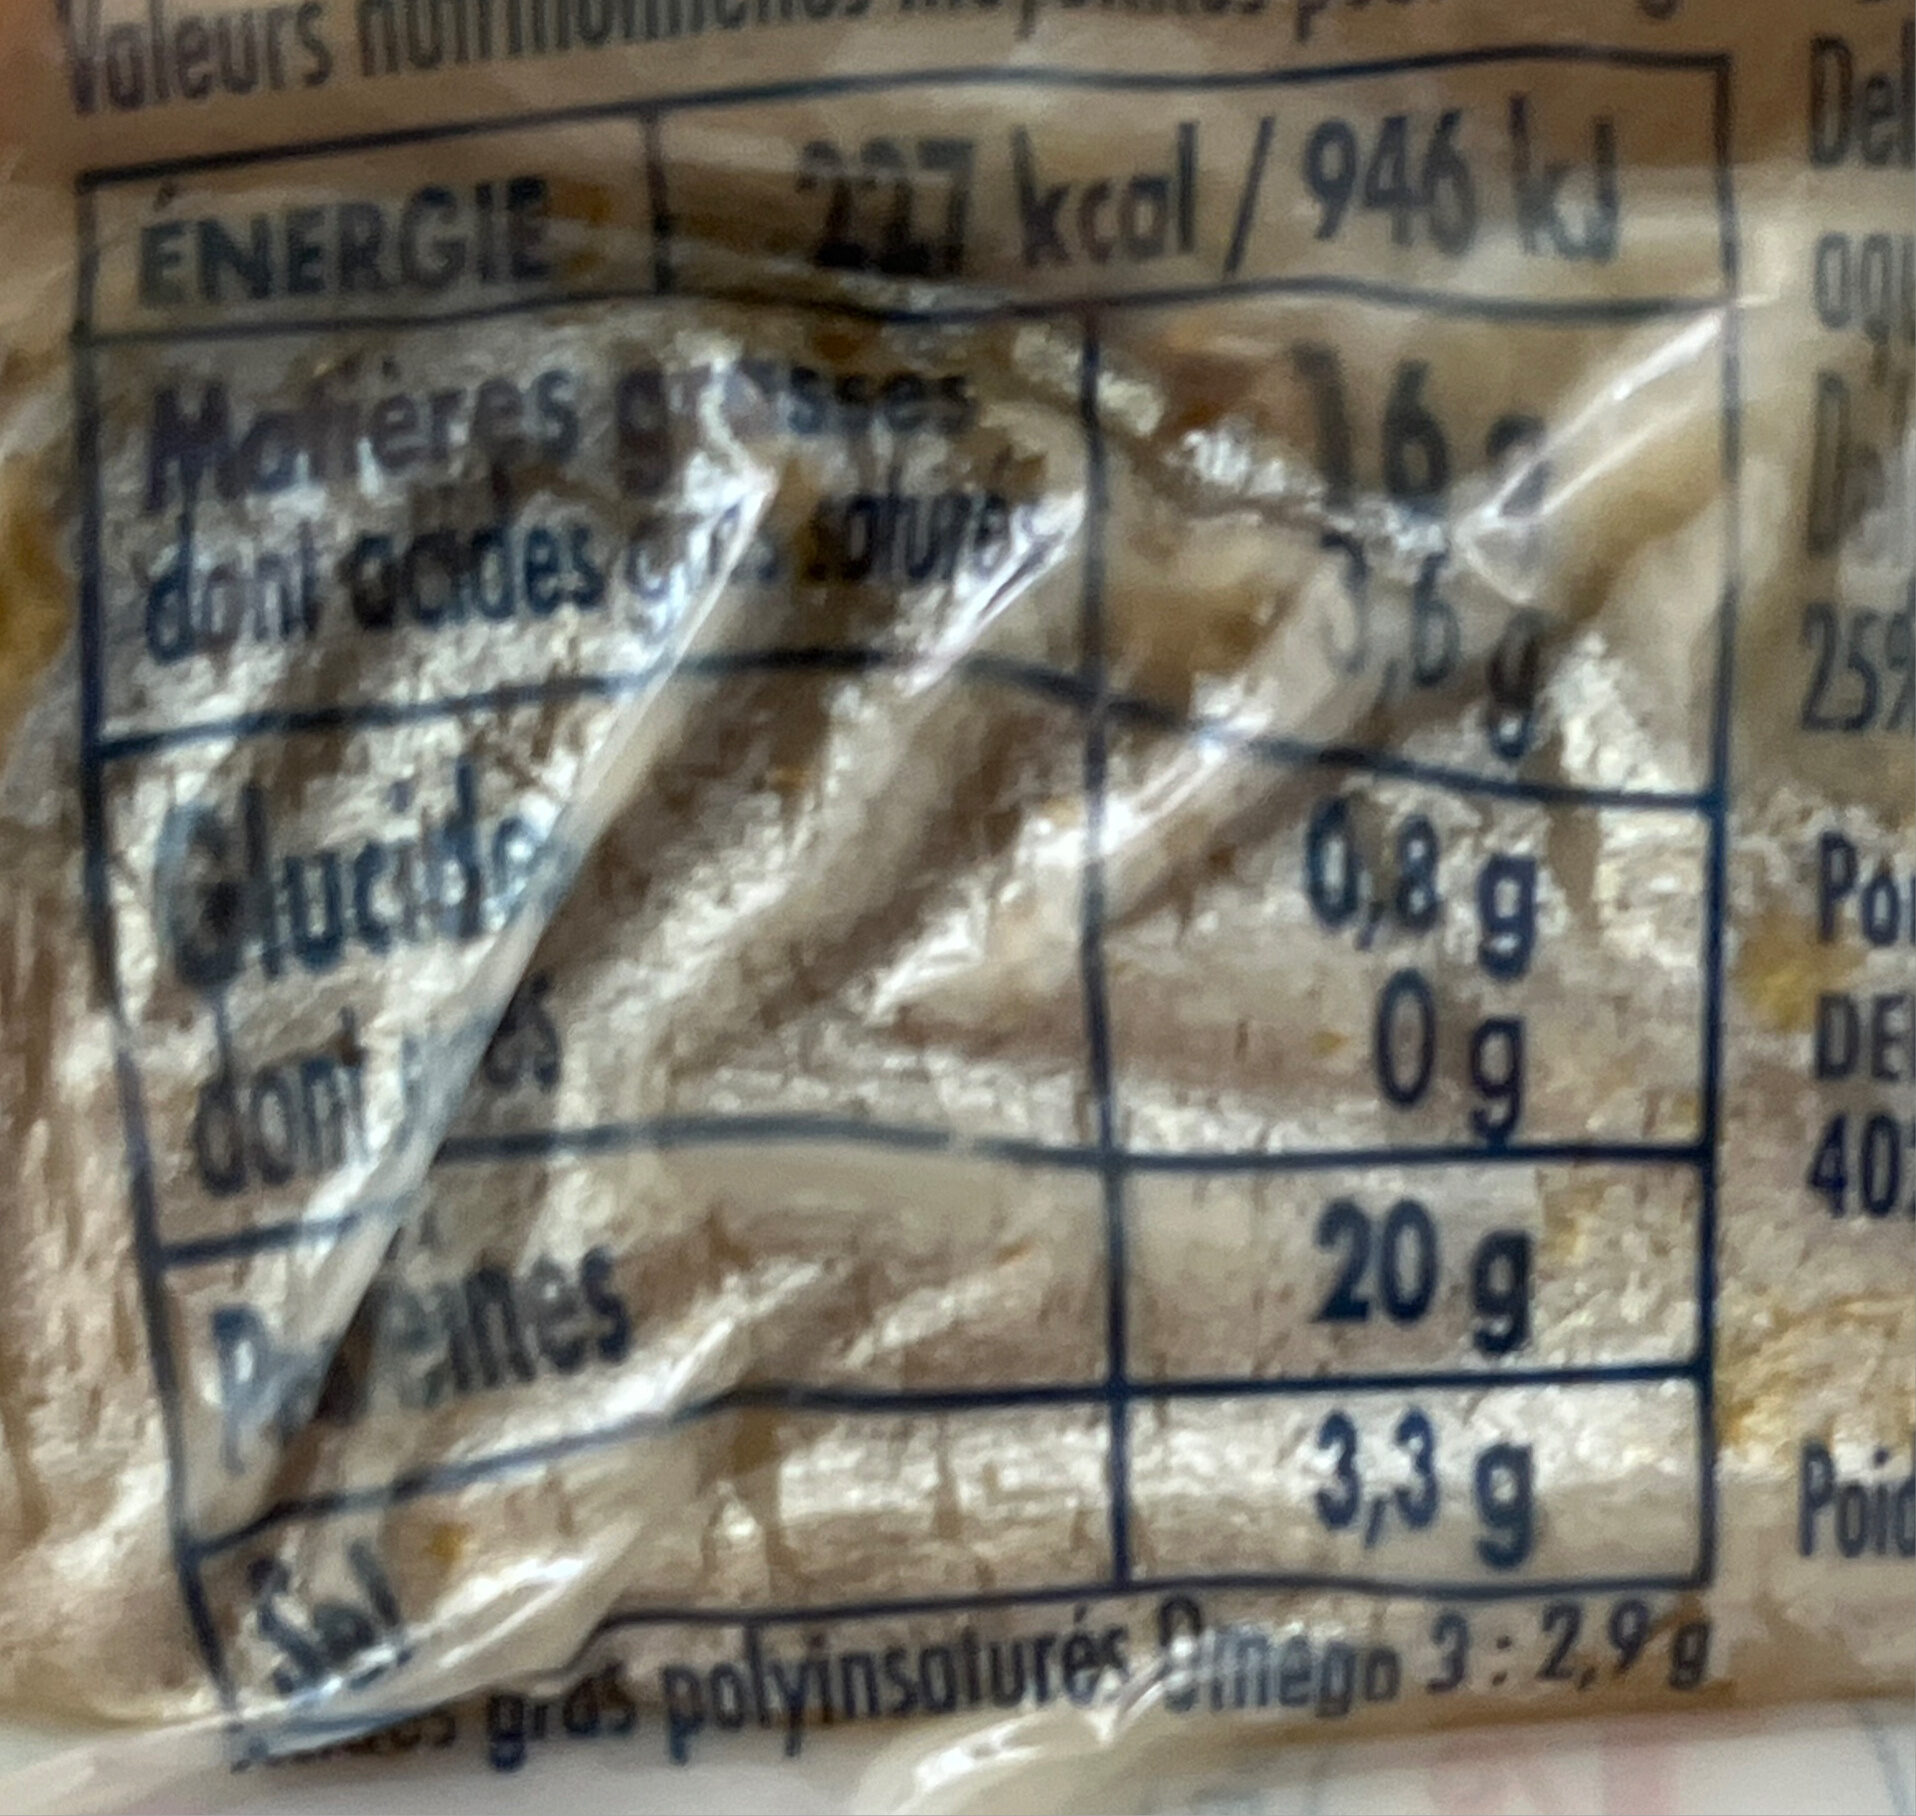 Filets de harengs fumés -25% de sel - Nutrition facts - fr